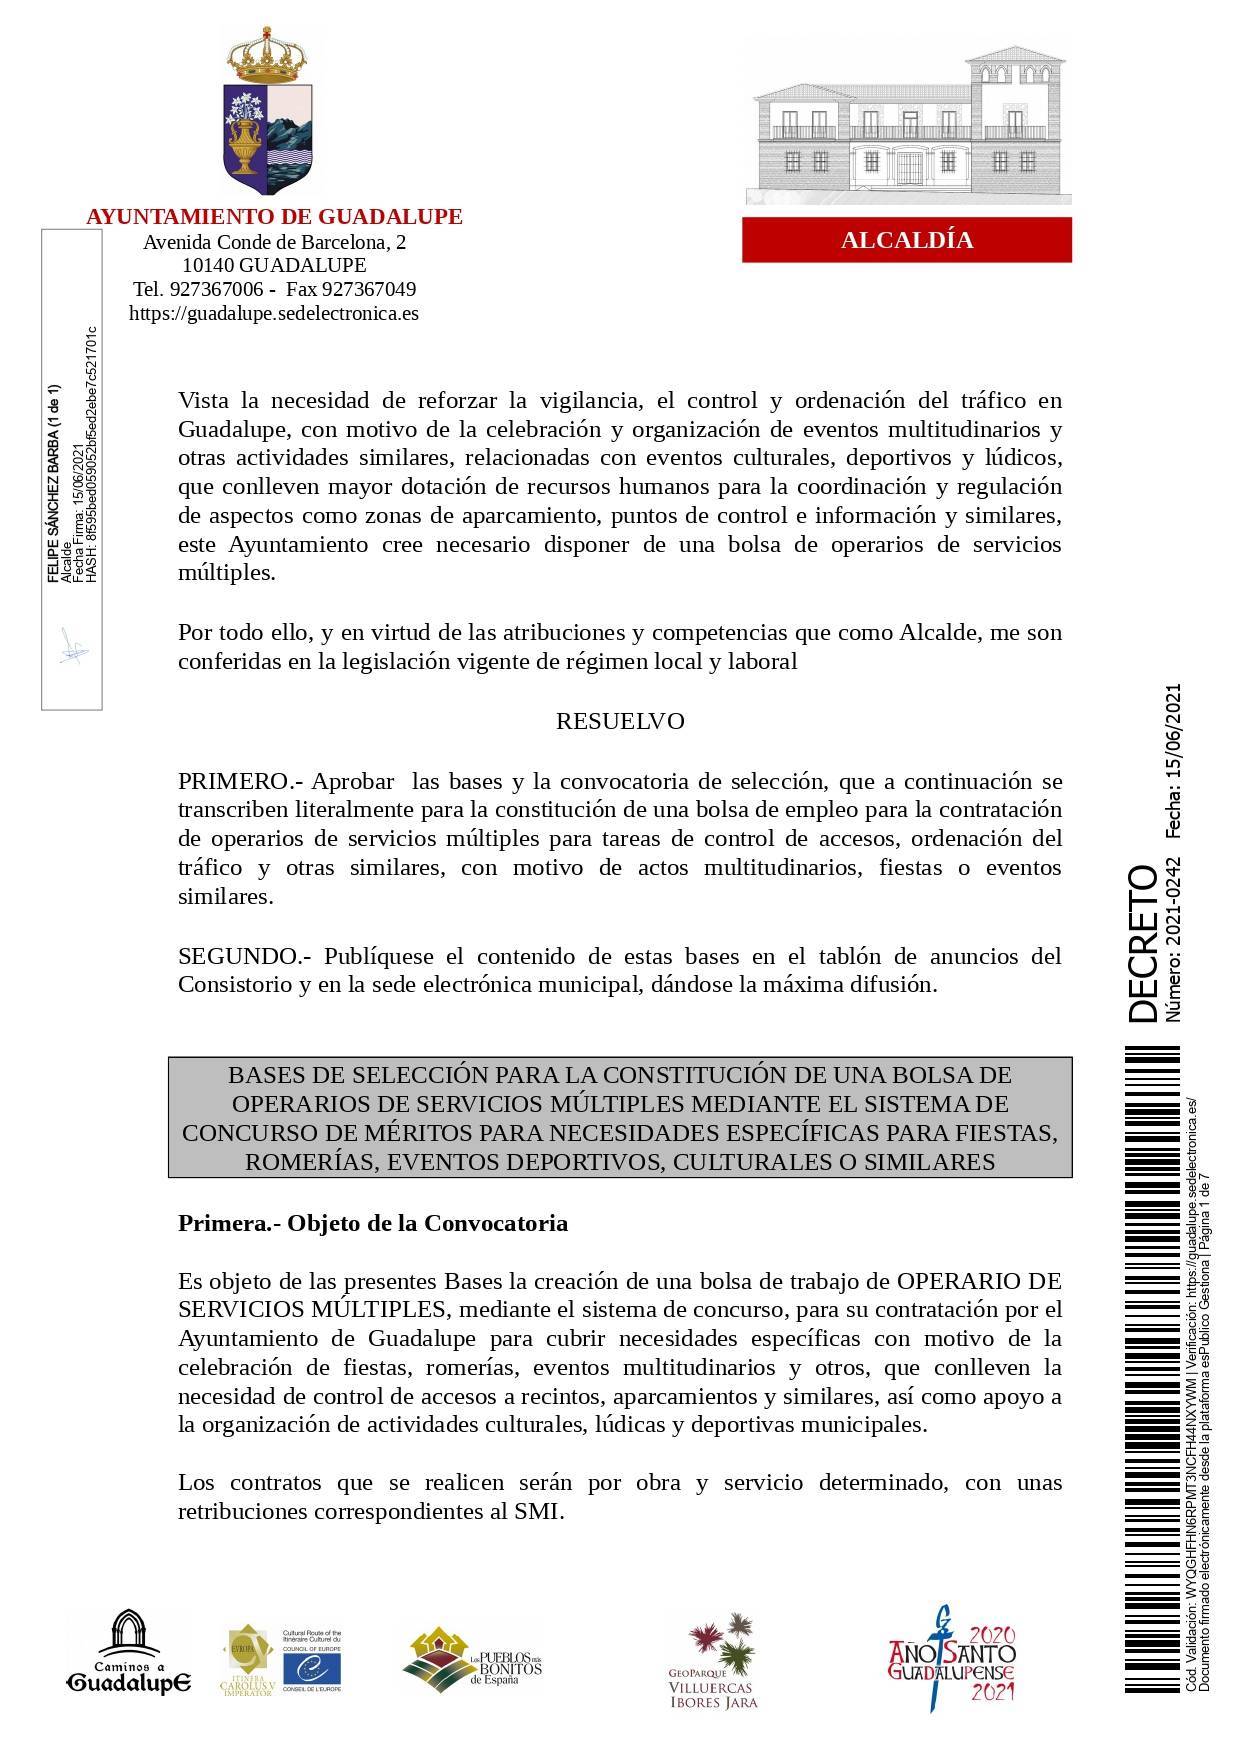 Bolsa de operarios de servicios múltiples para eventos (2021) - Guadalupe (Cáceres) 1